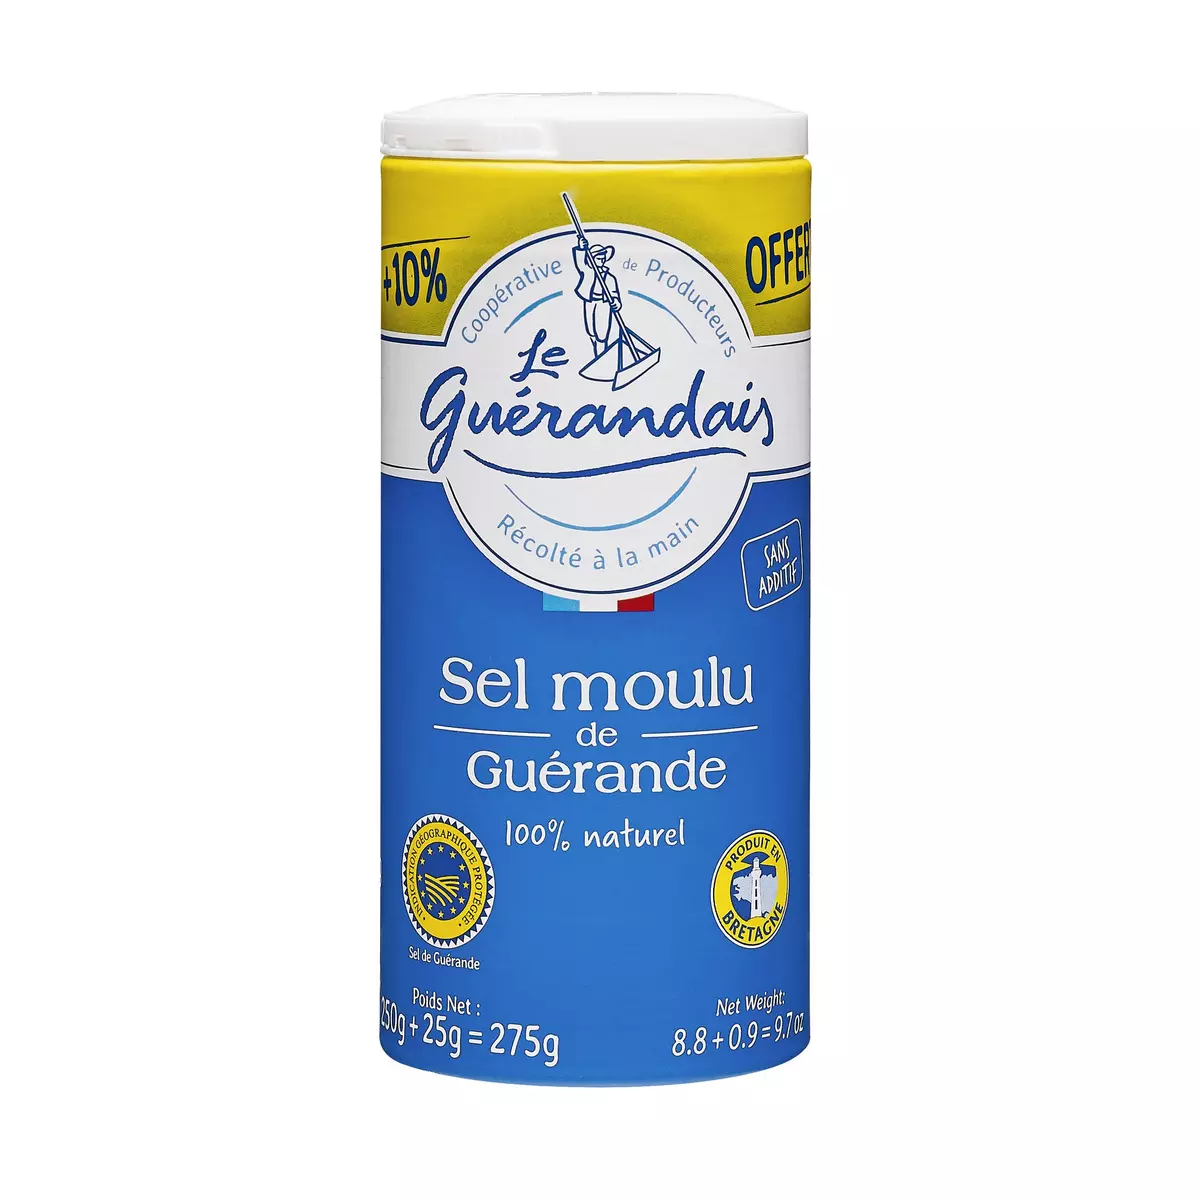 LE GUERANDAIS Sel moulu de Guérande IGP 250g + 25g offerts 275g